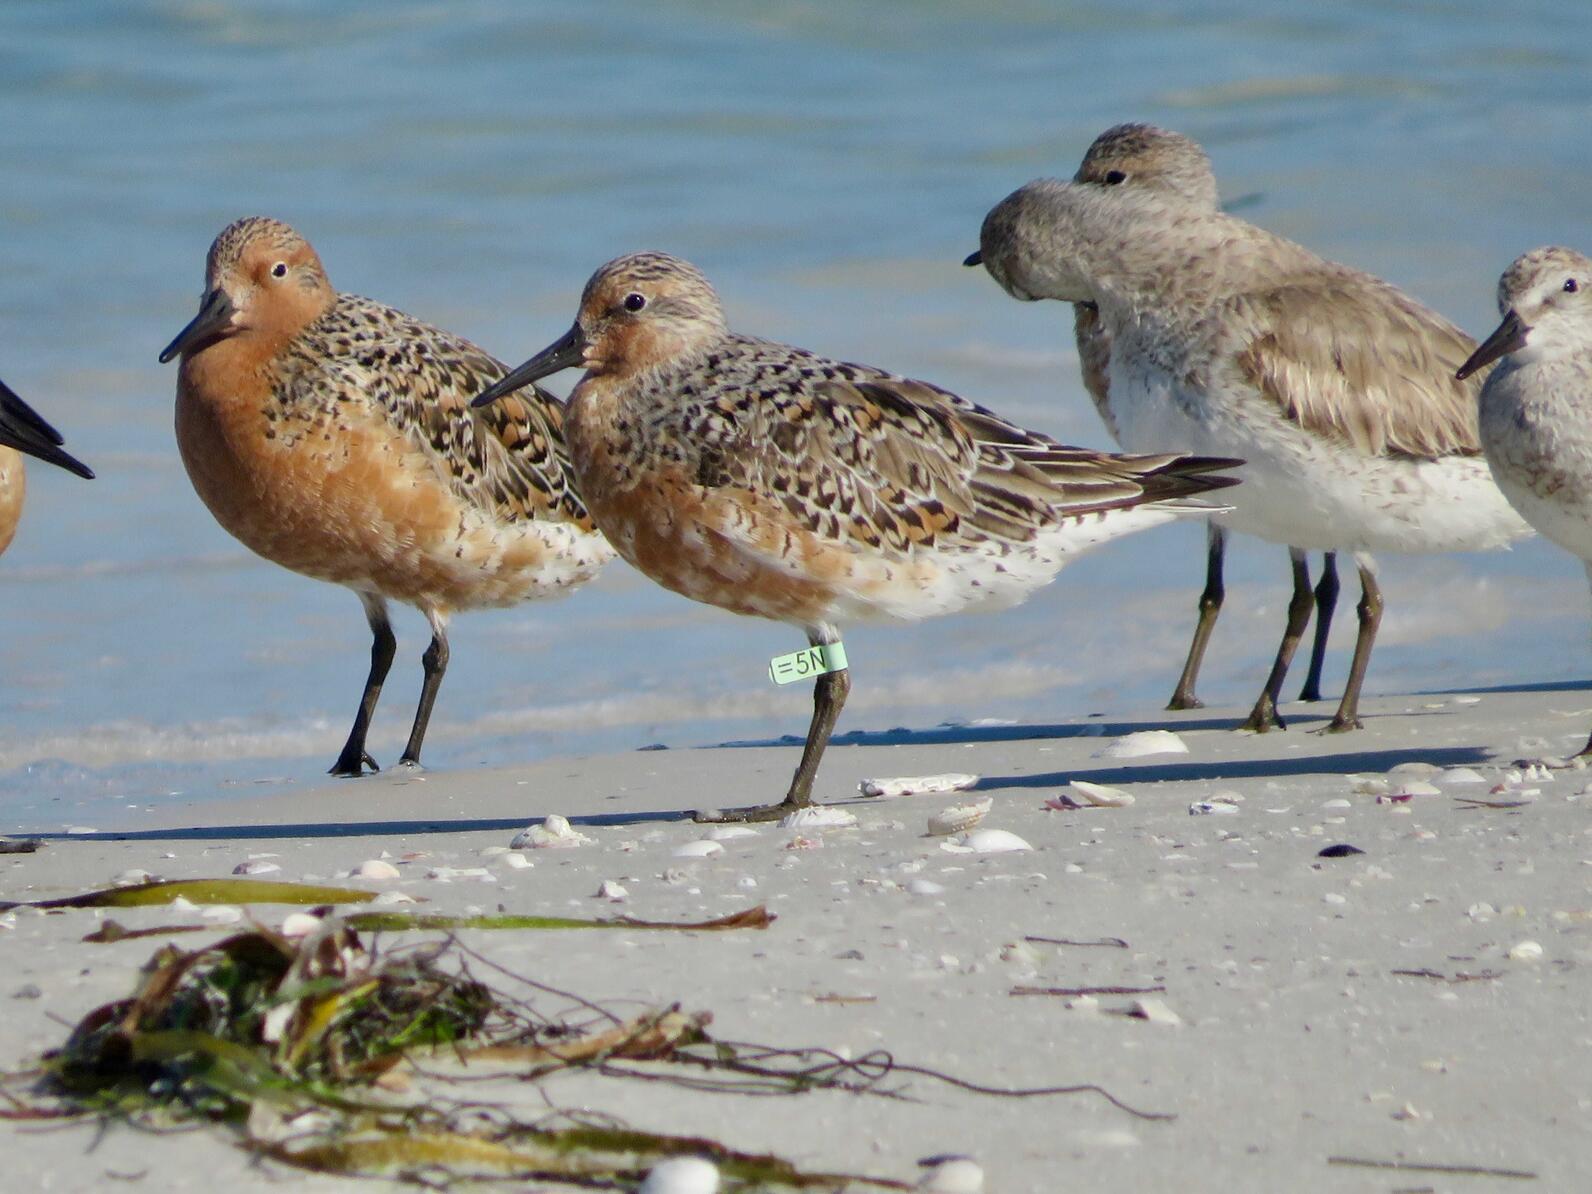 A flock of birds on the beach